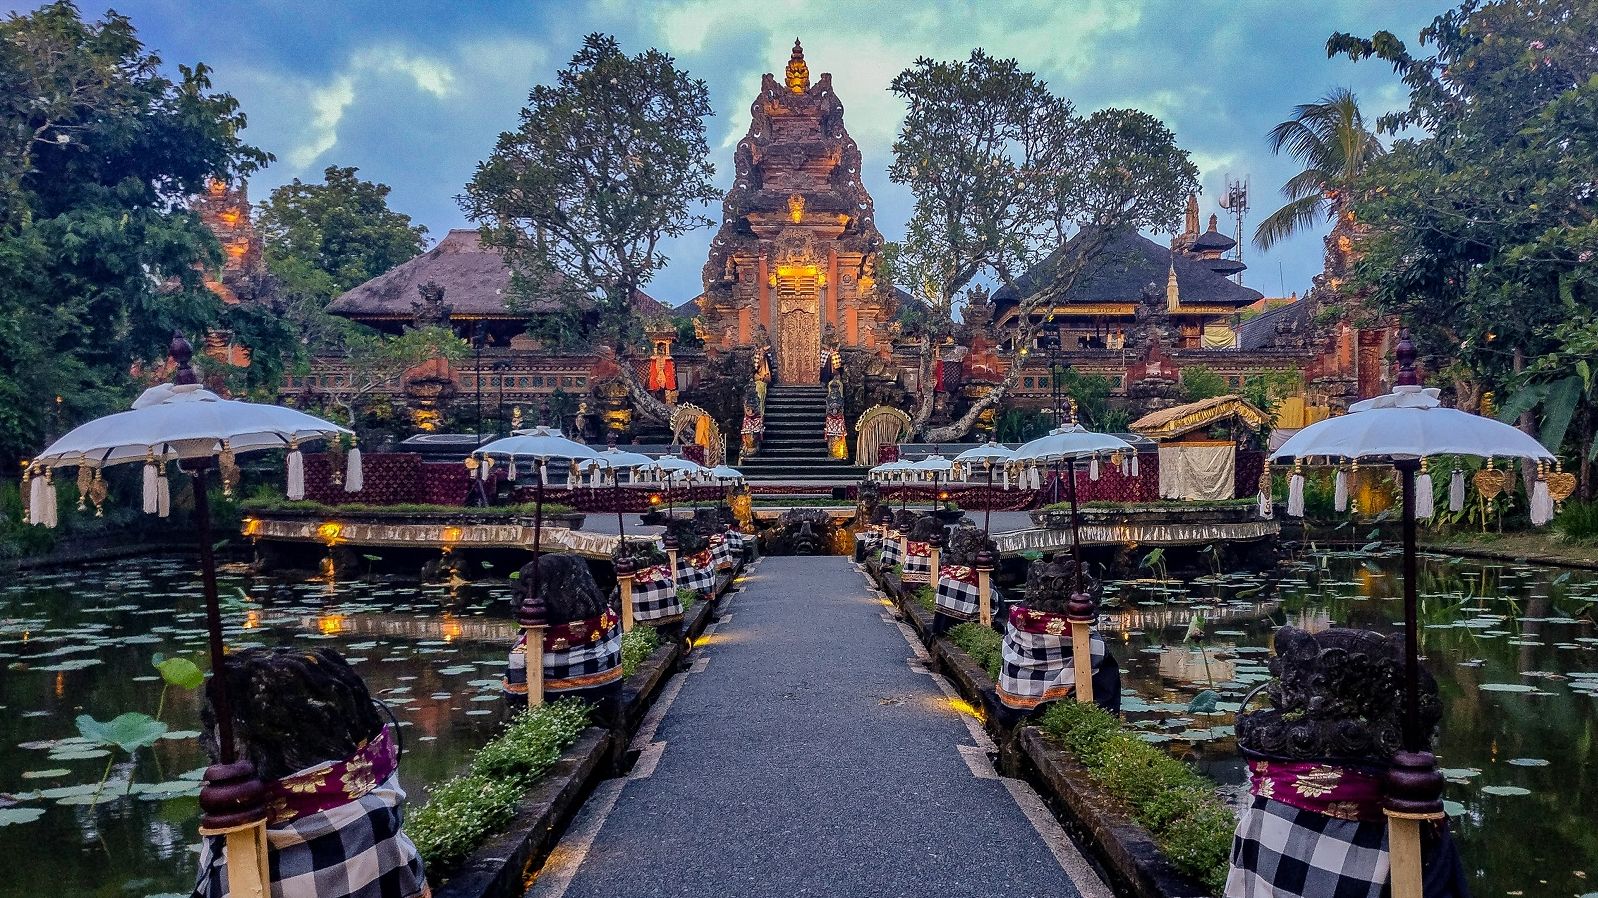 Keunikan Pura Saraswati Gianyar Bali dengan arsitektur khas candi berpadu dengan kolam teratai - Сергей Ваньков